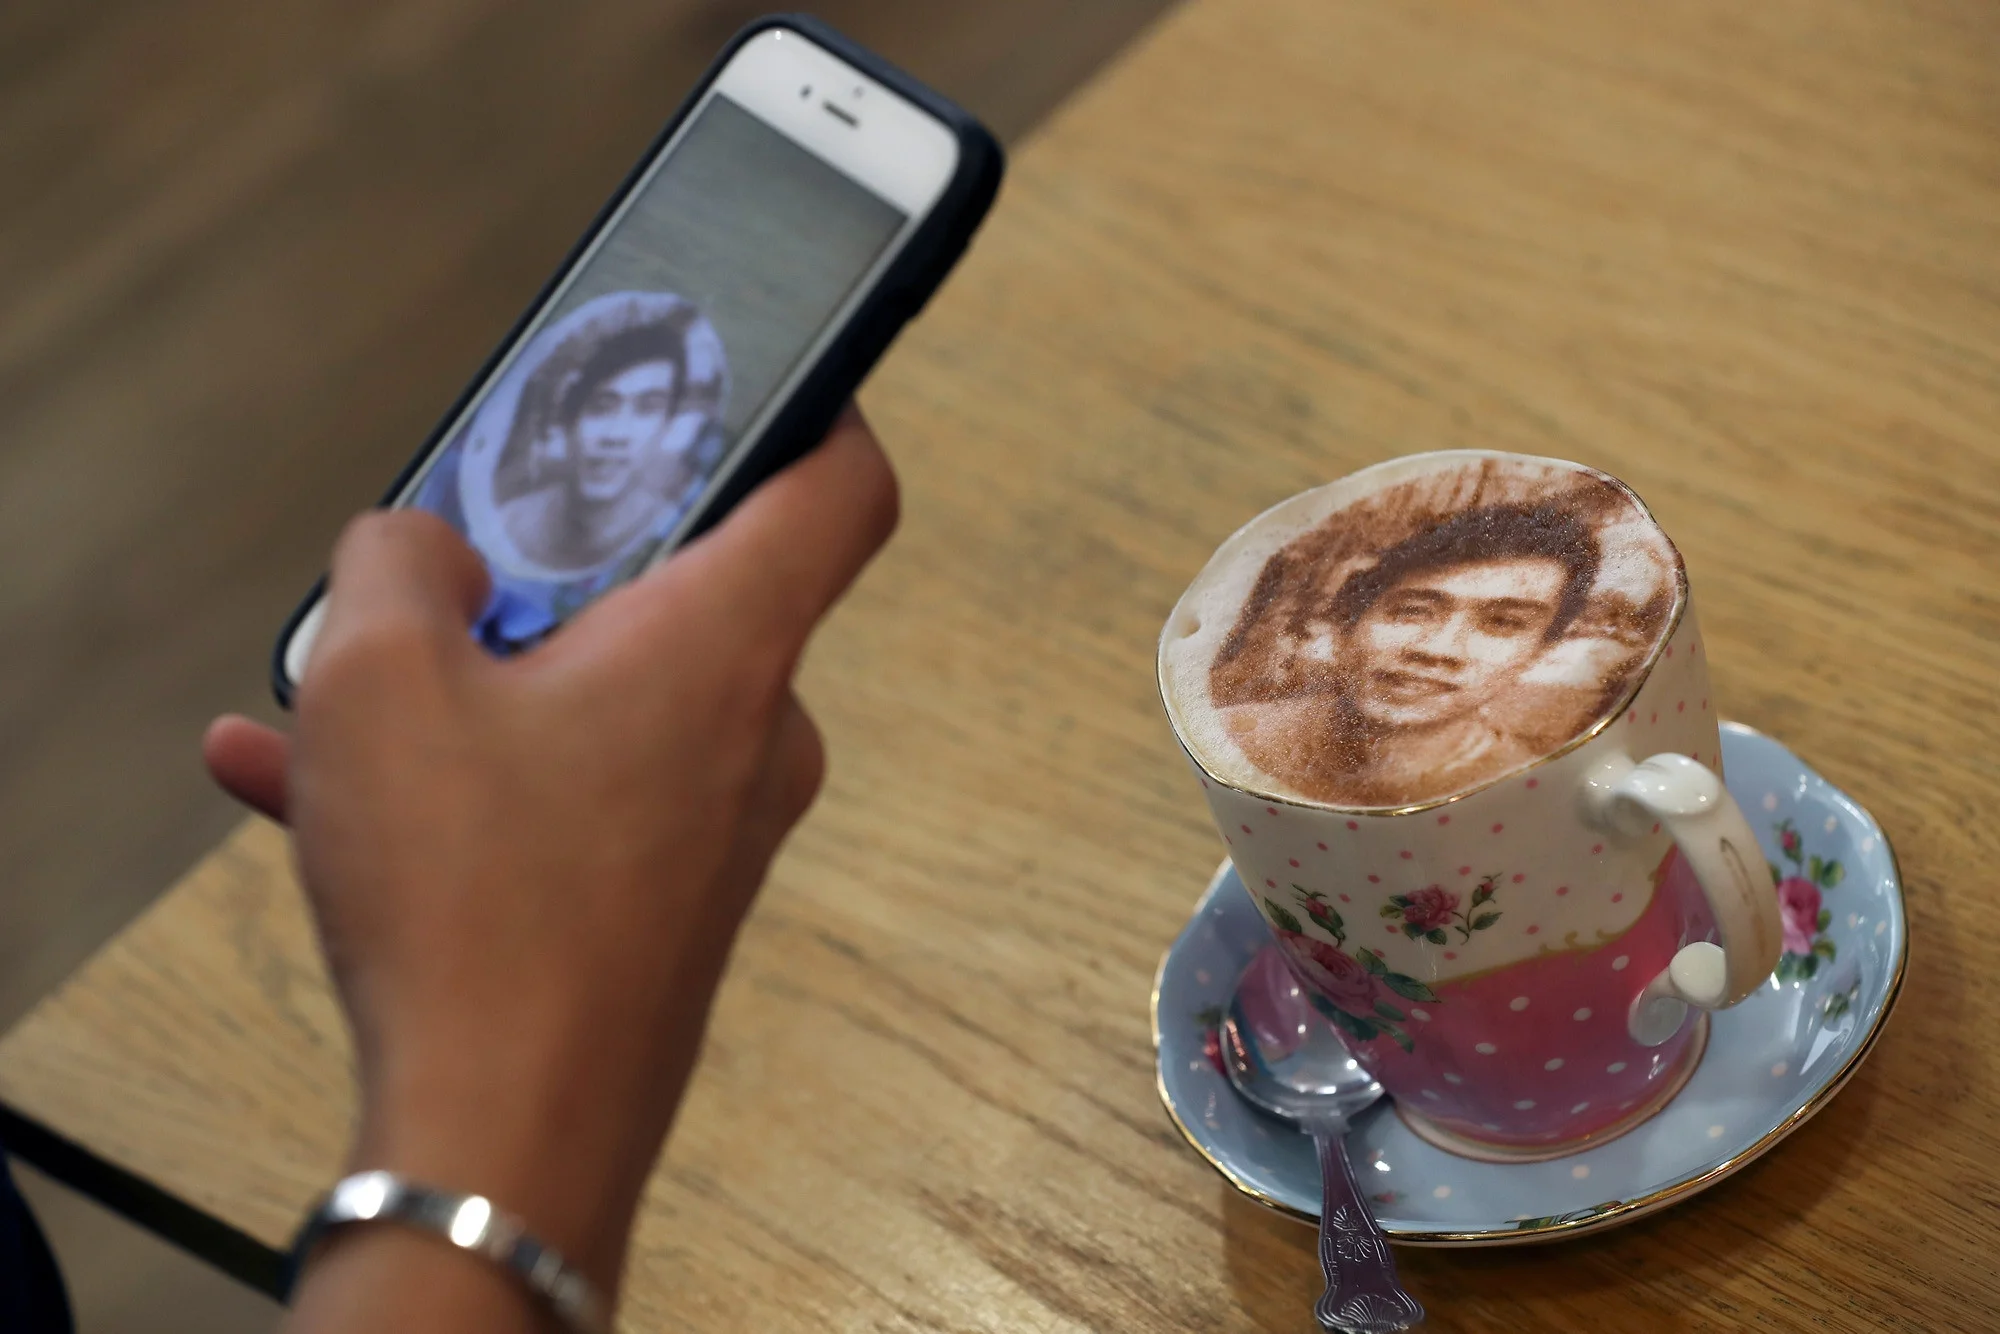 Селфічіно: в Лондоні відкрилось кафе, де можна випити каву зі своїм фото - фото 362103